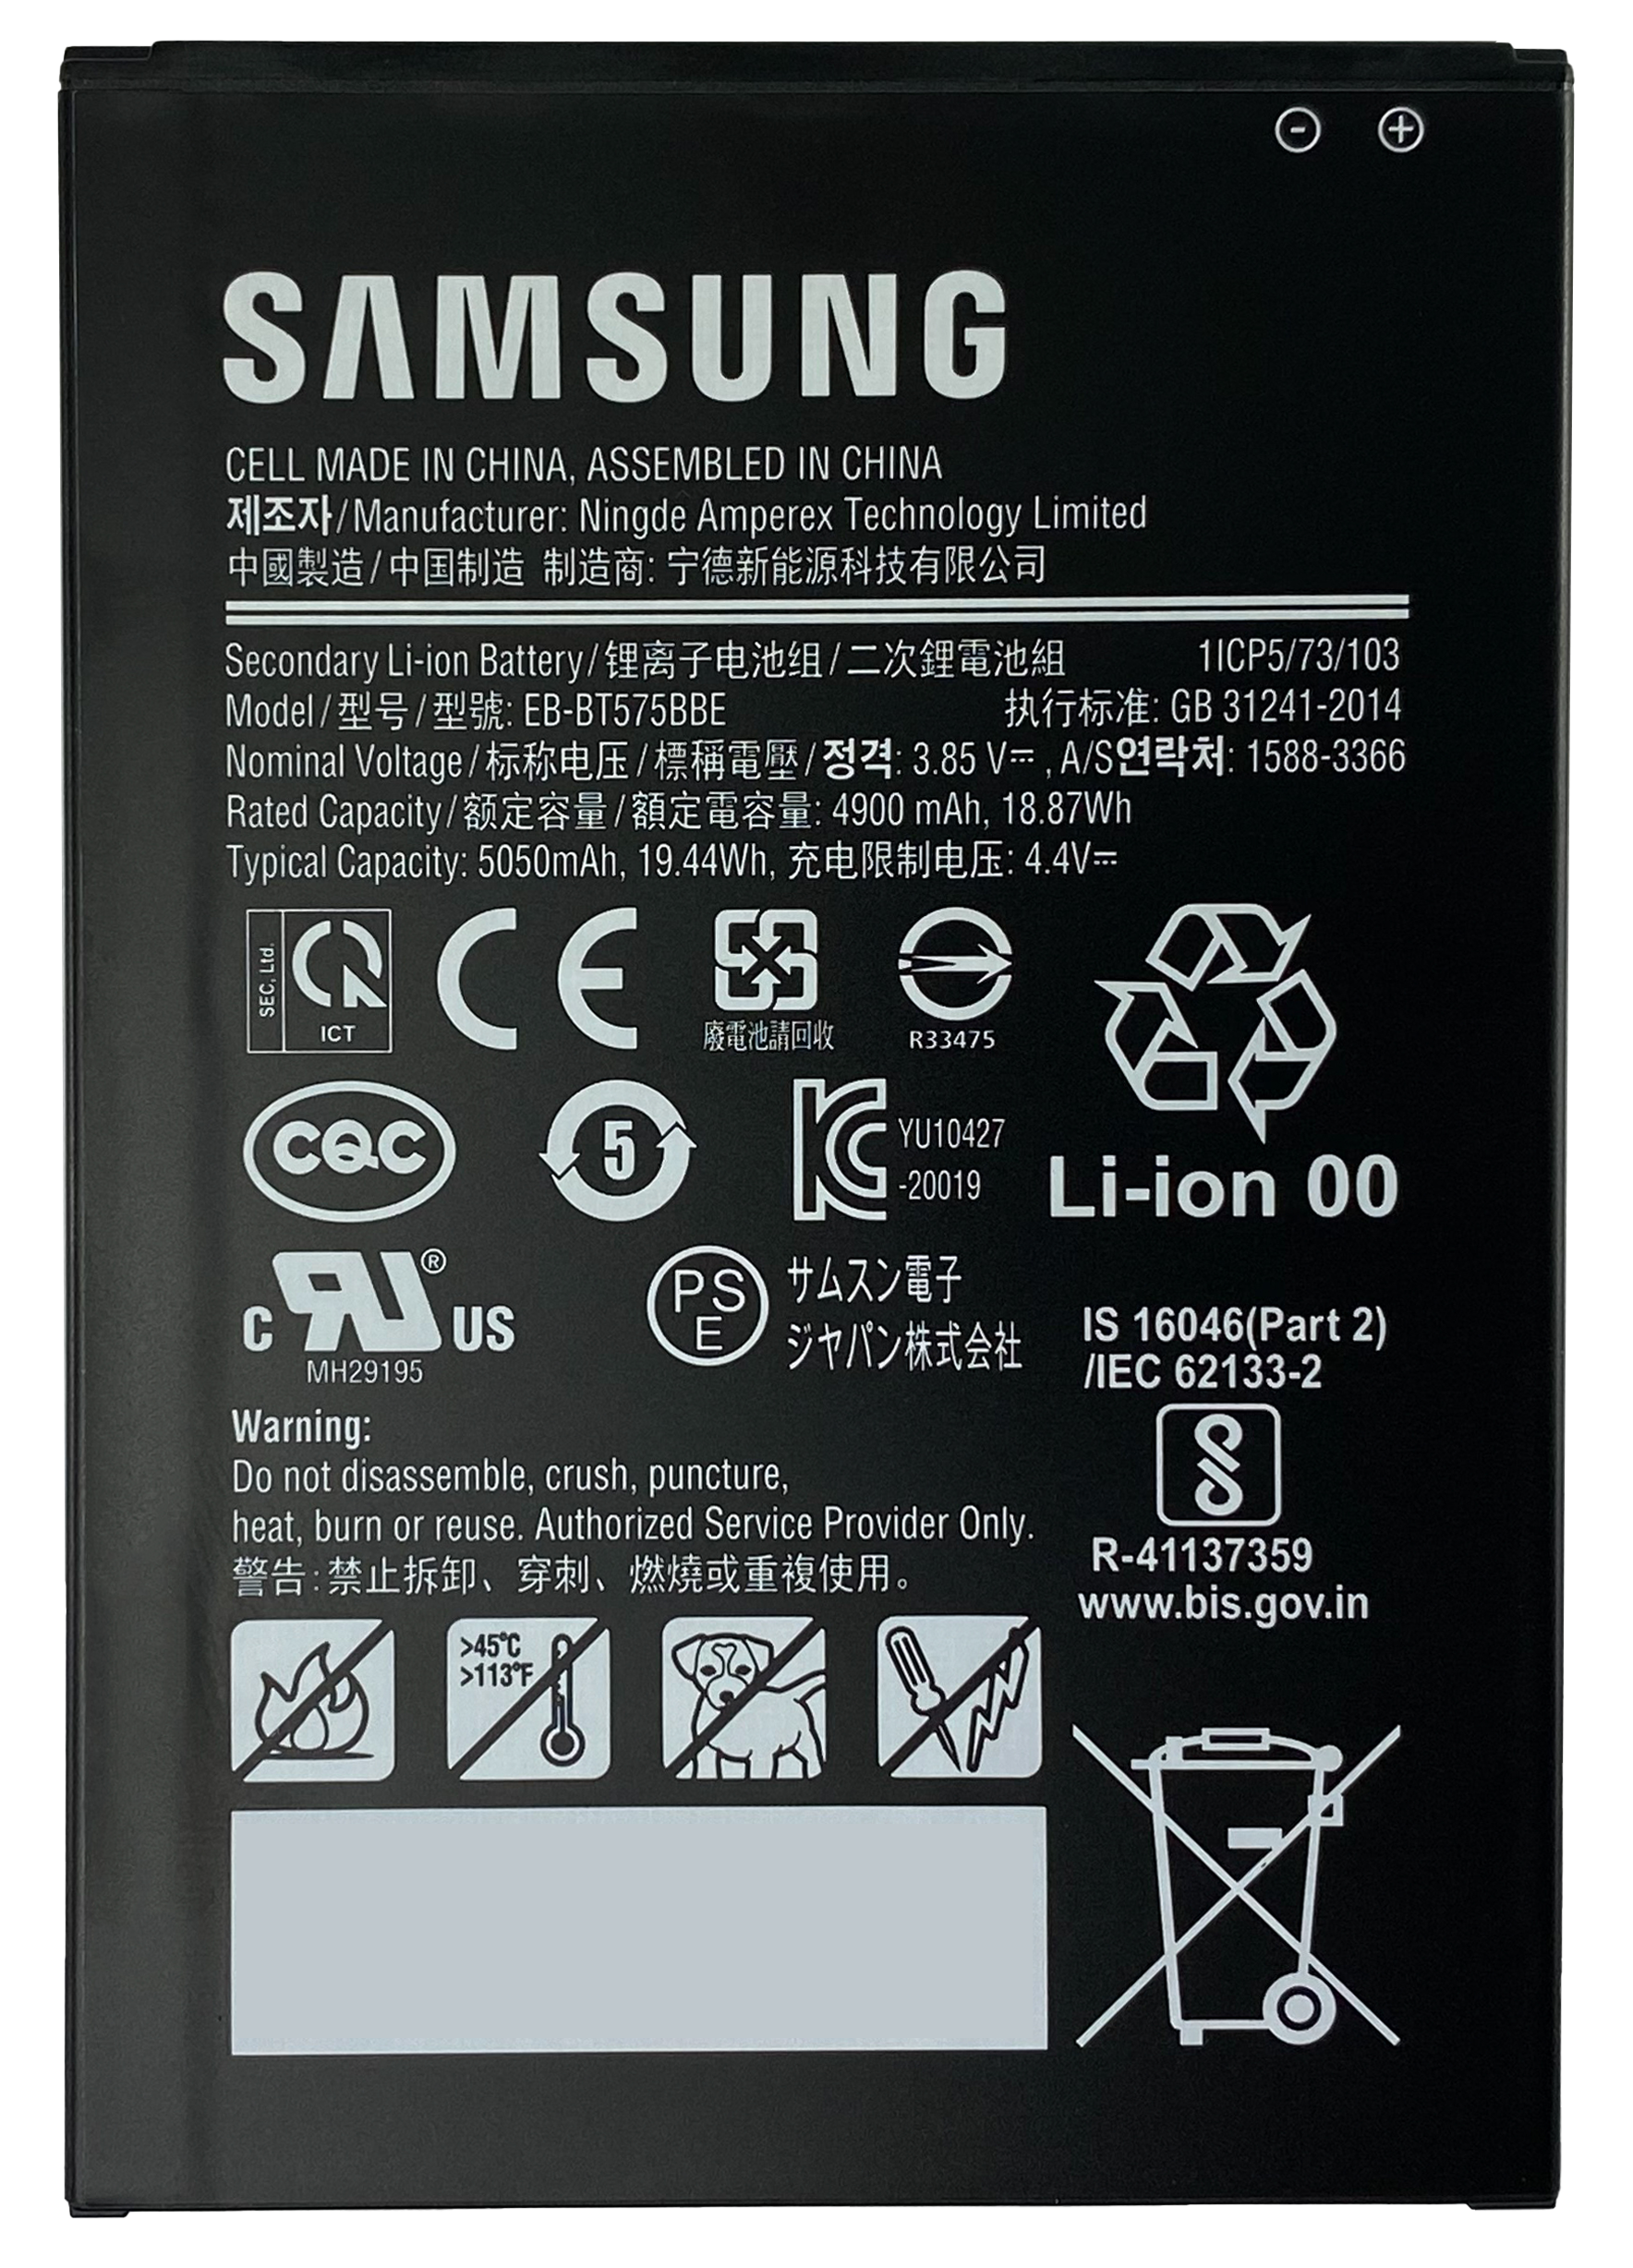 Réparation de la batterie Galaxy Tab 3 